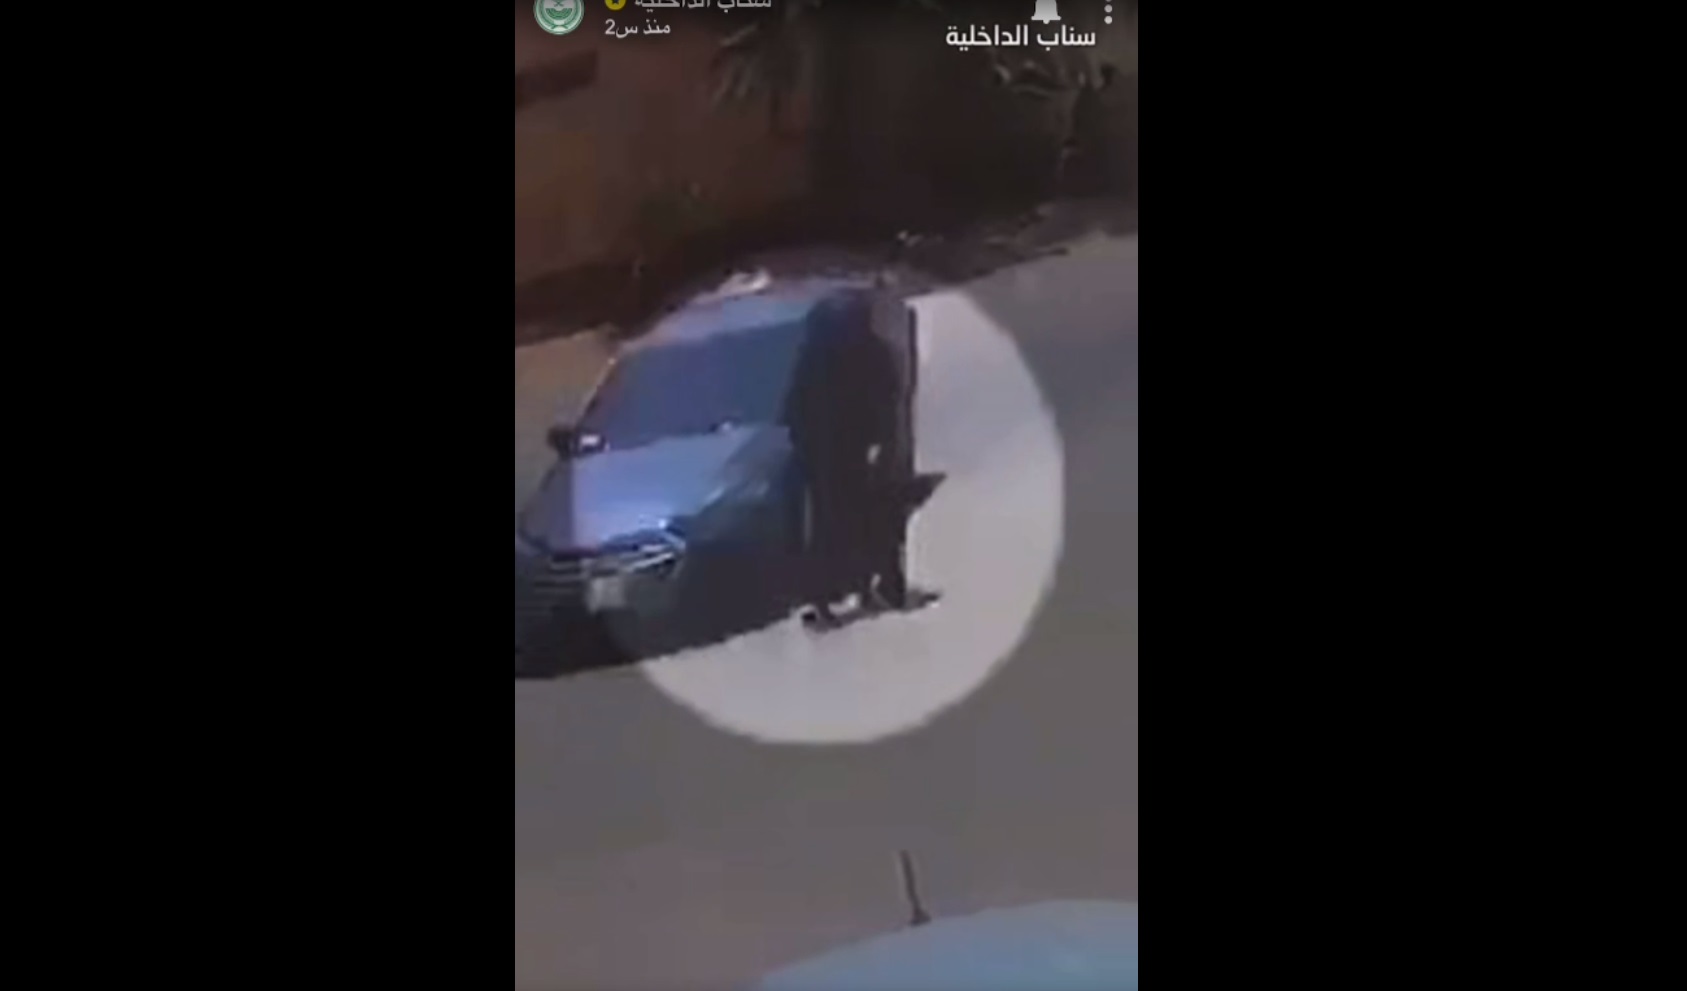 القبض على مواطنين سرقوا مركبة وتعدوا على النساء في أسواق وأحياء الرياض - المواطن